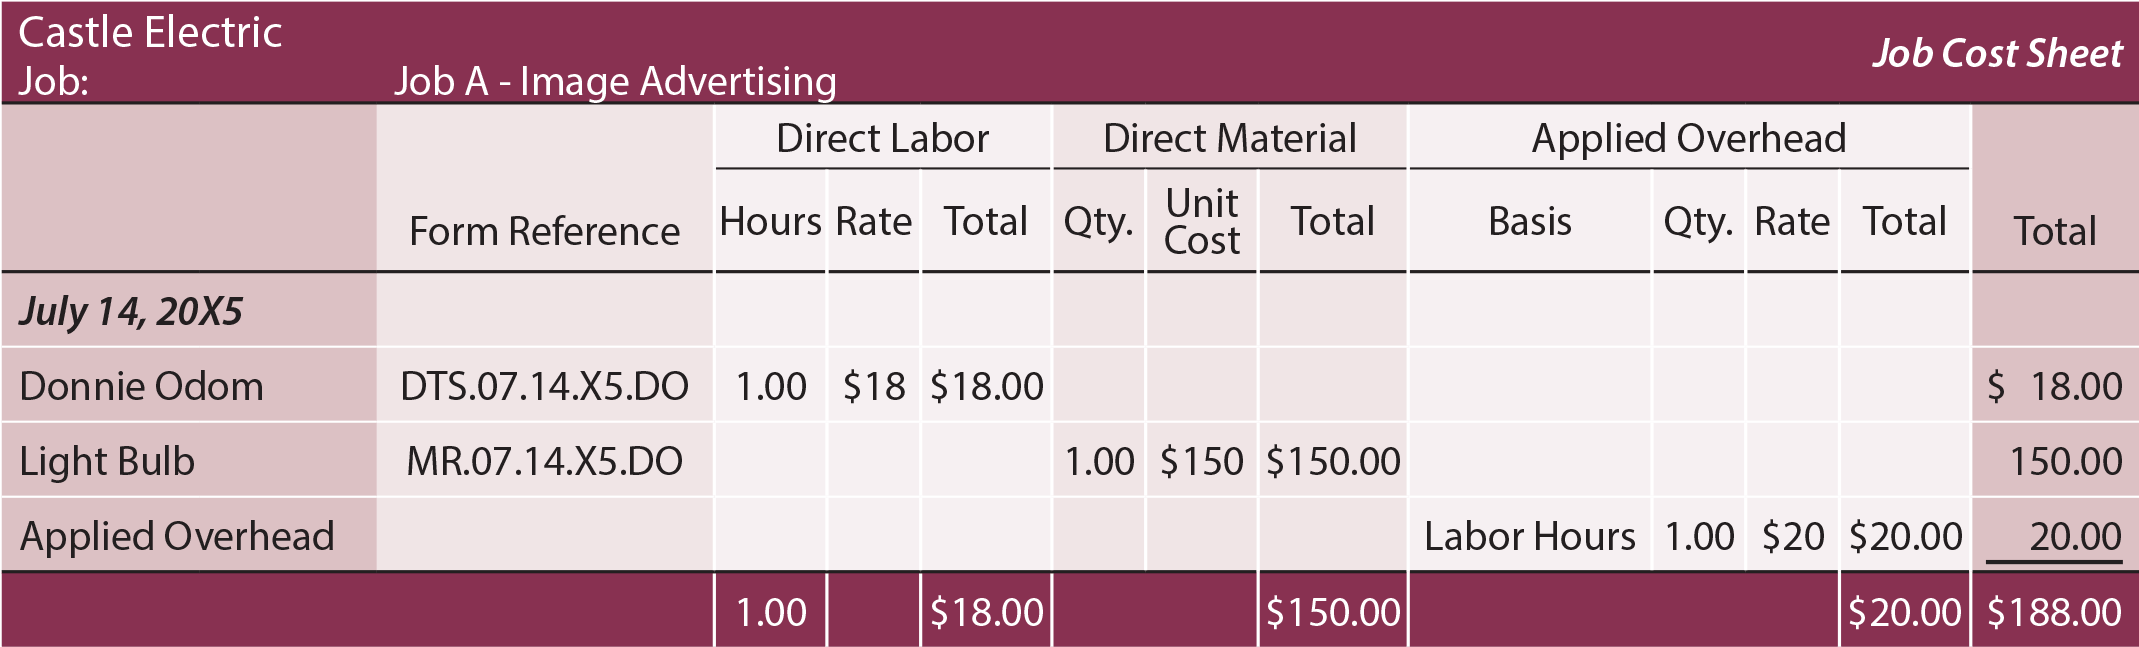 Job Costing Sheet - Job A 